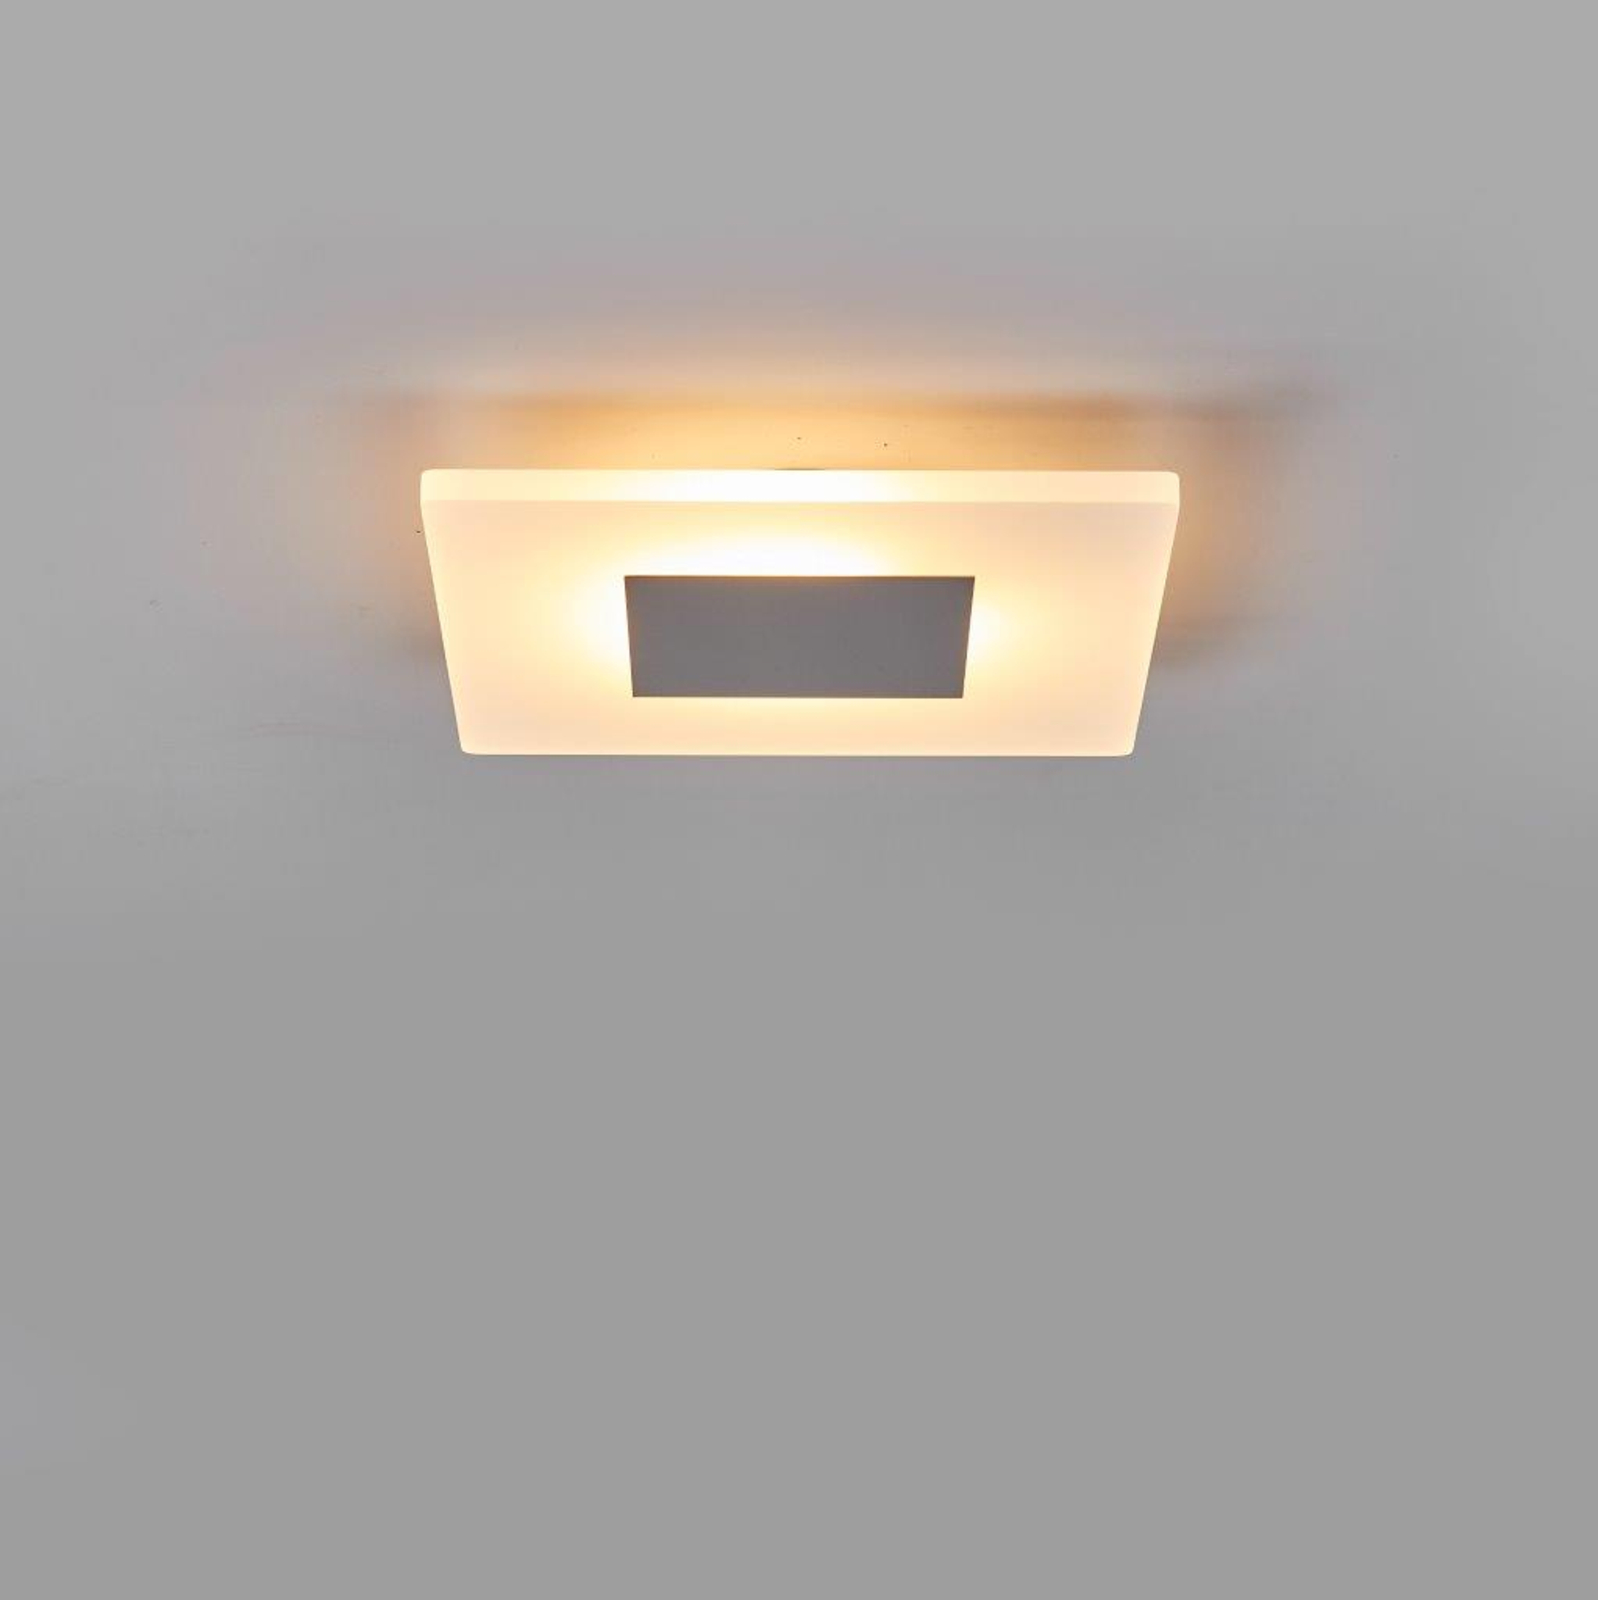 Tarja - hoekige LED-plafondlamp